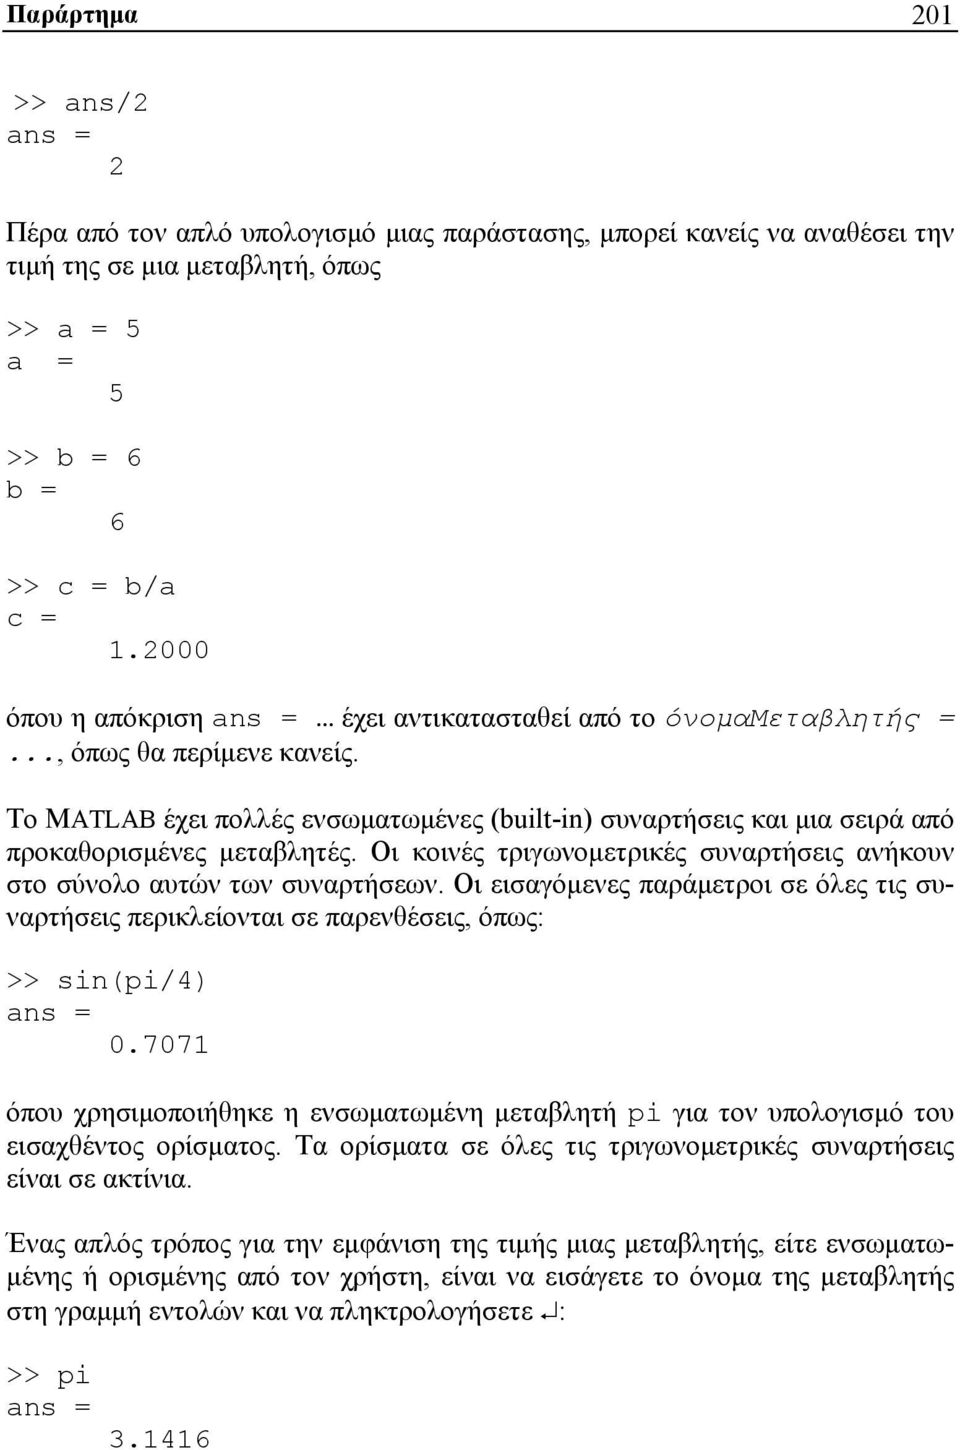 Το MATLAB έχει πολλές ενσωματωμένες (built-in) συναρτήσεις και μια σειρά από προκαθορισμένες μεταβλητές. Οι κοινές τριγωνομετρικές συναρτήσεις ανήκουν στο σύνολο αυτών των συναρτήσεων.